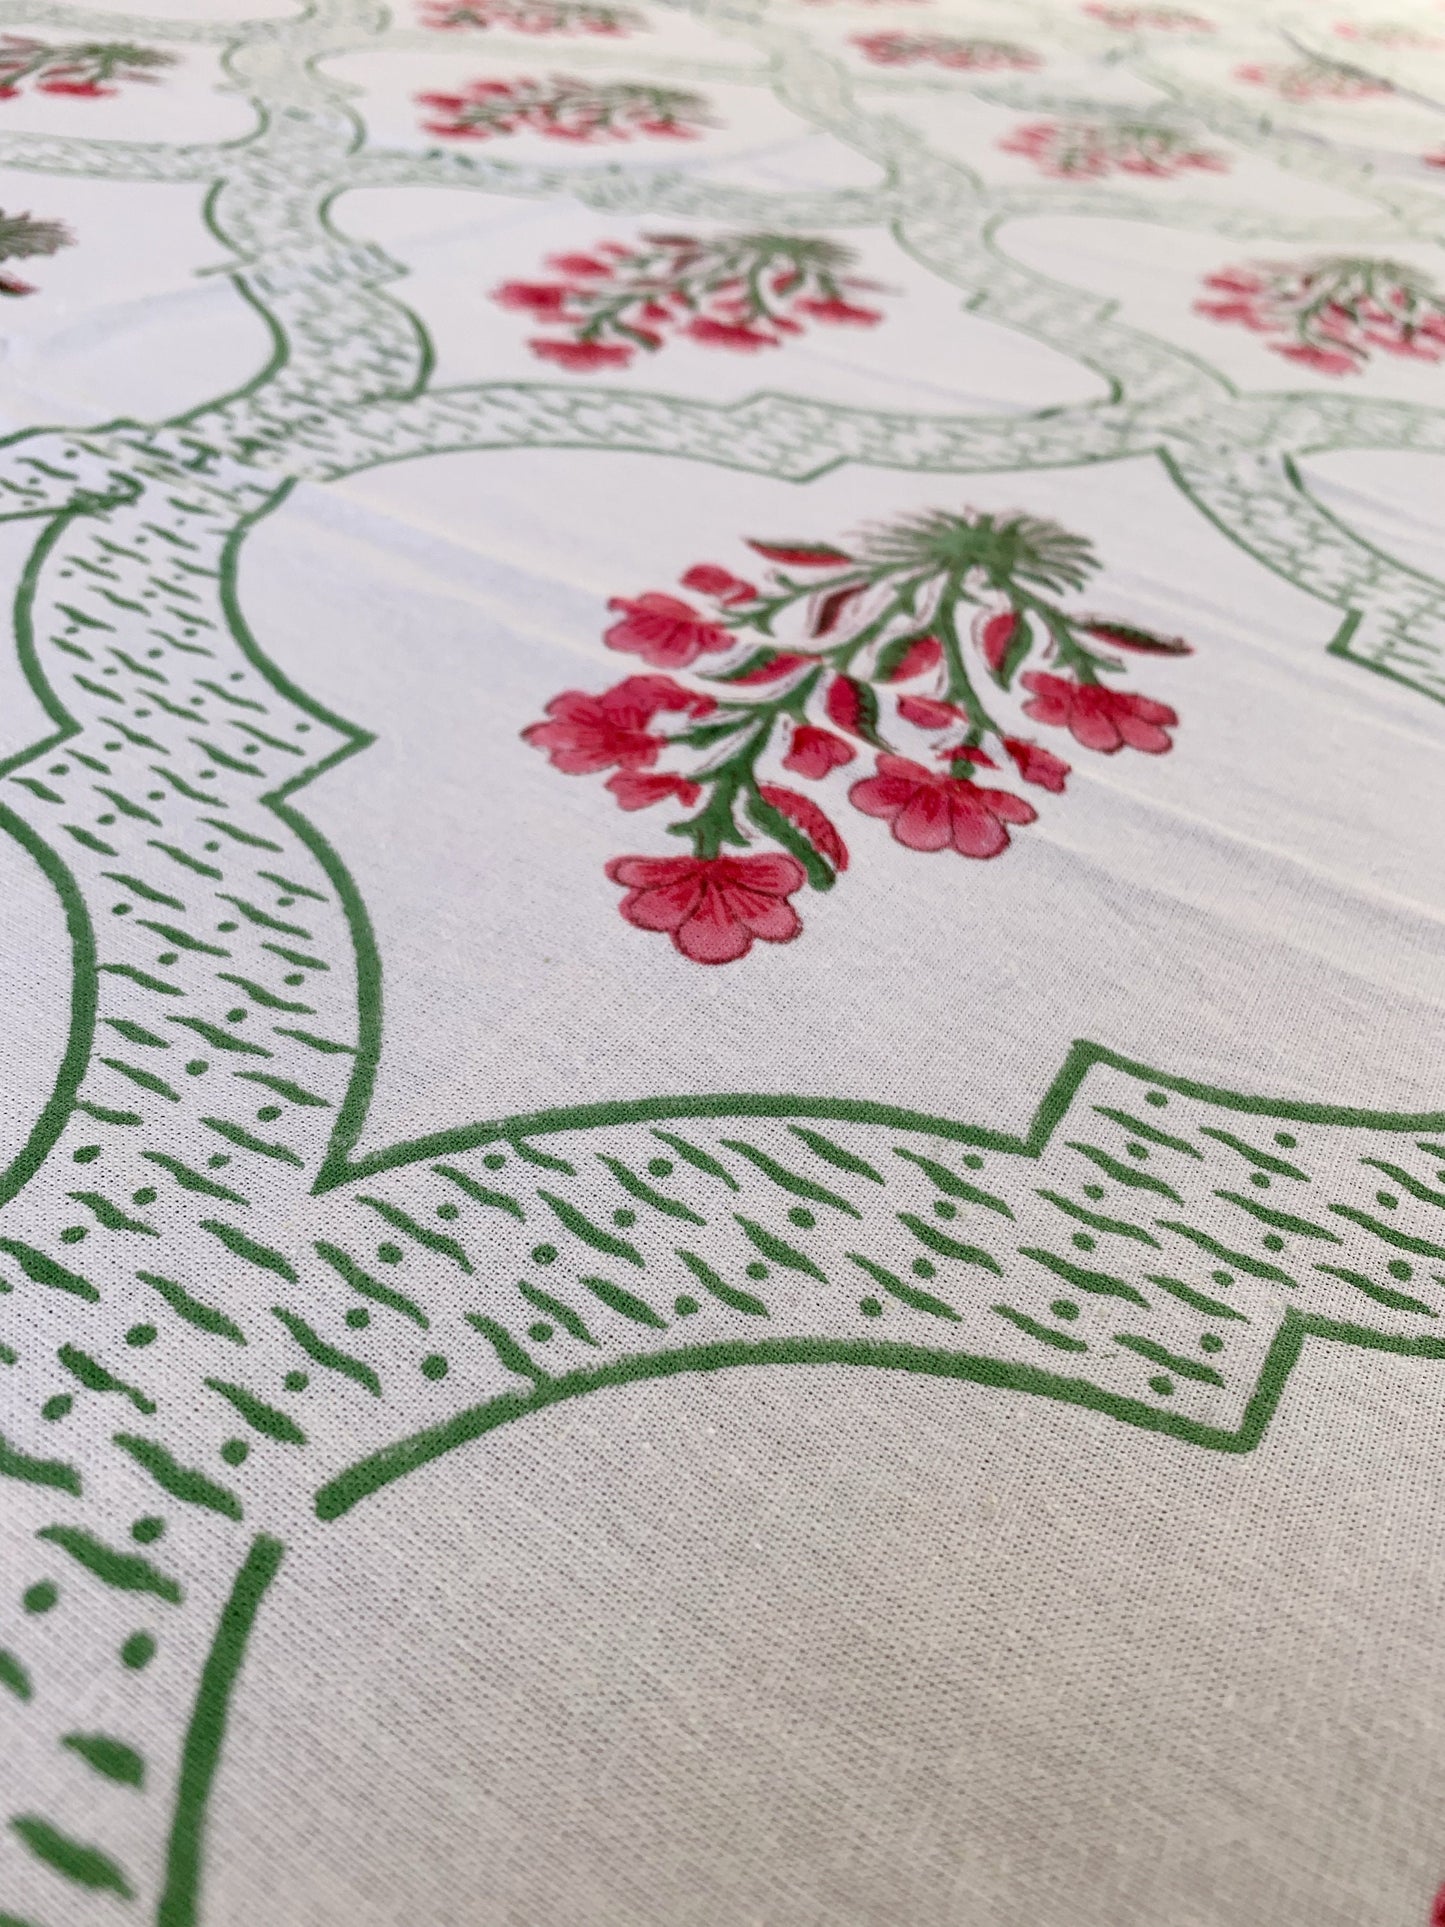 Mantel algodón puro estampado block print artesanal en India · Seis comensales · Mantel boho chic 100% algodón hindú · Blanco mughal rosa